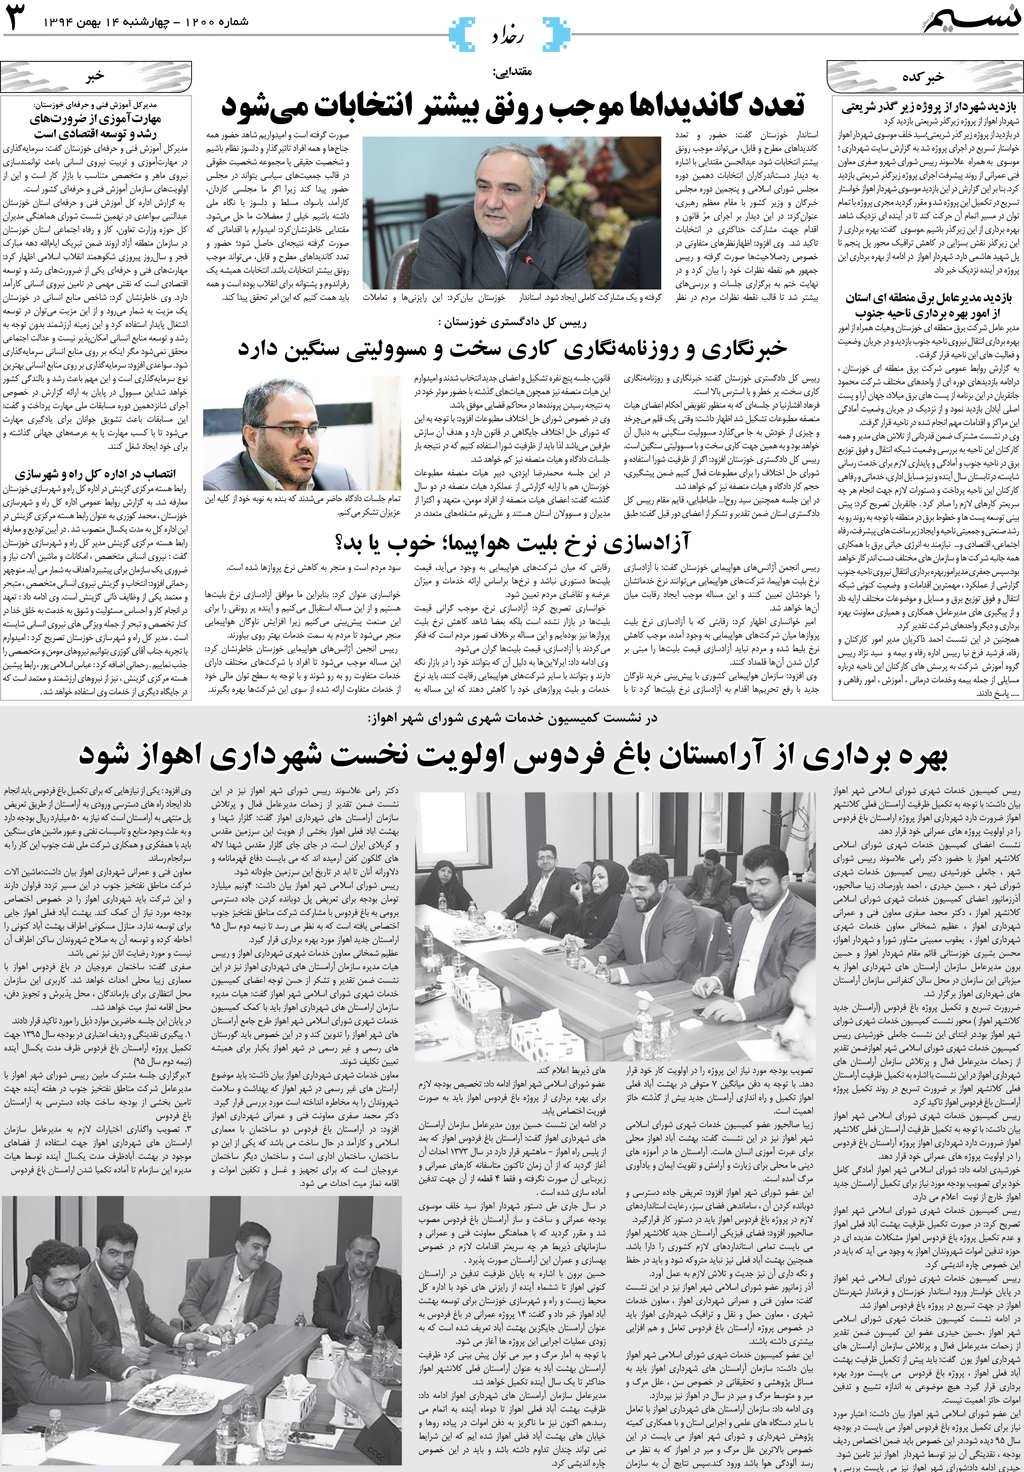 صفحه رخداد روزنامه نسیم شماره 1200